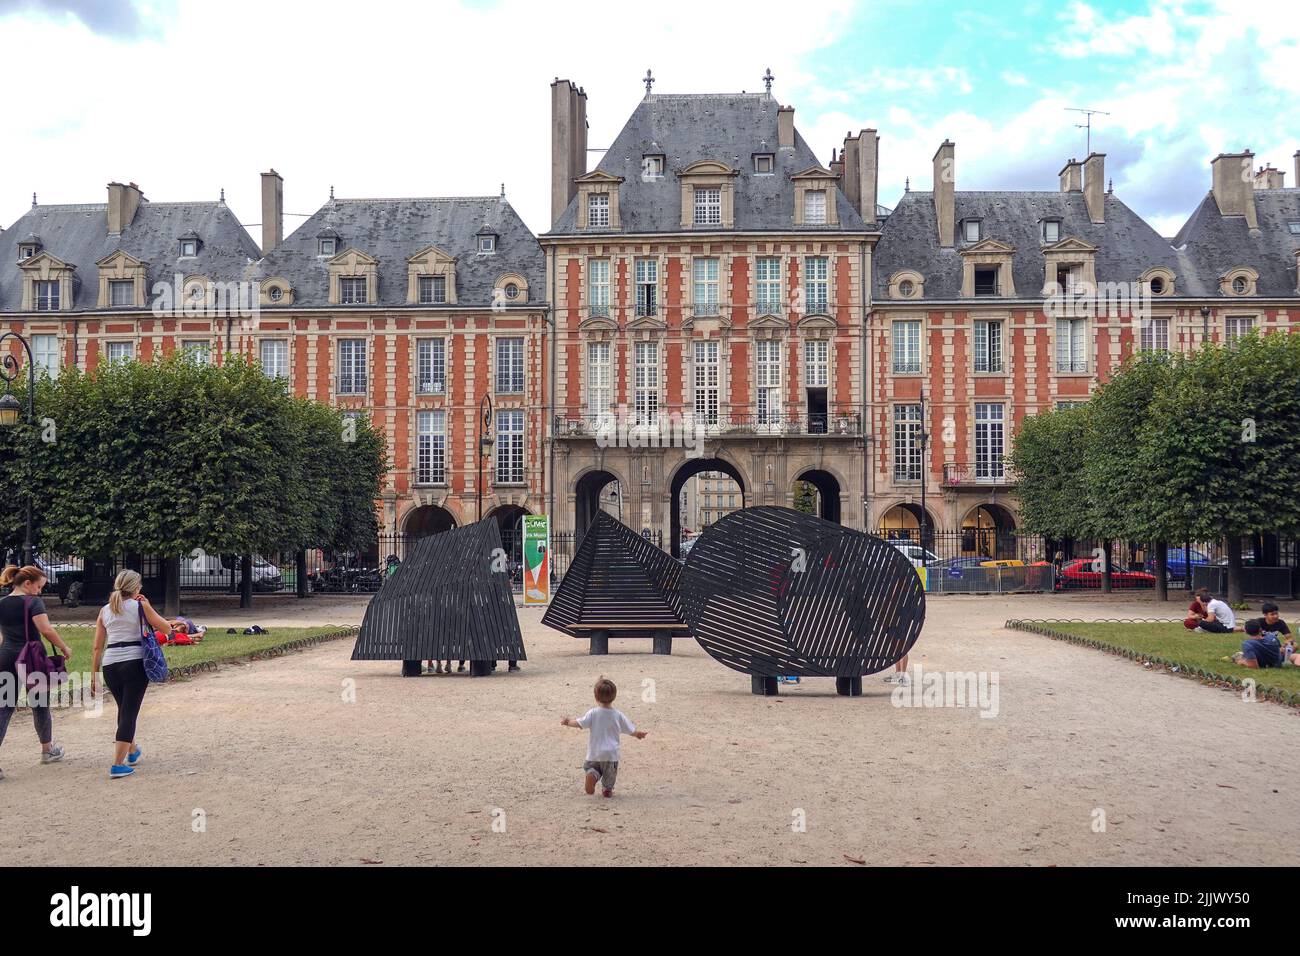 Francia, París, la Place des Vosges, originalmente Place Royale, es la plaza más antigua planeada en París, Francia. Se encuentra en el distrito de Marais, y. Foto de stock